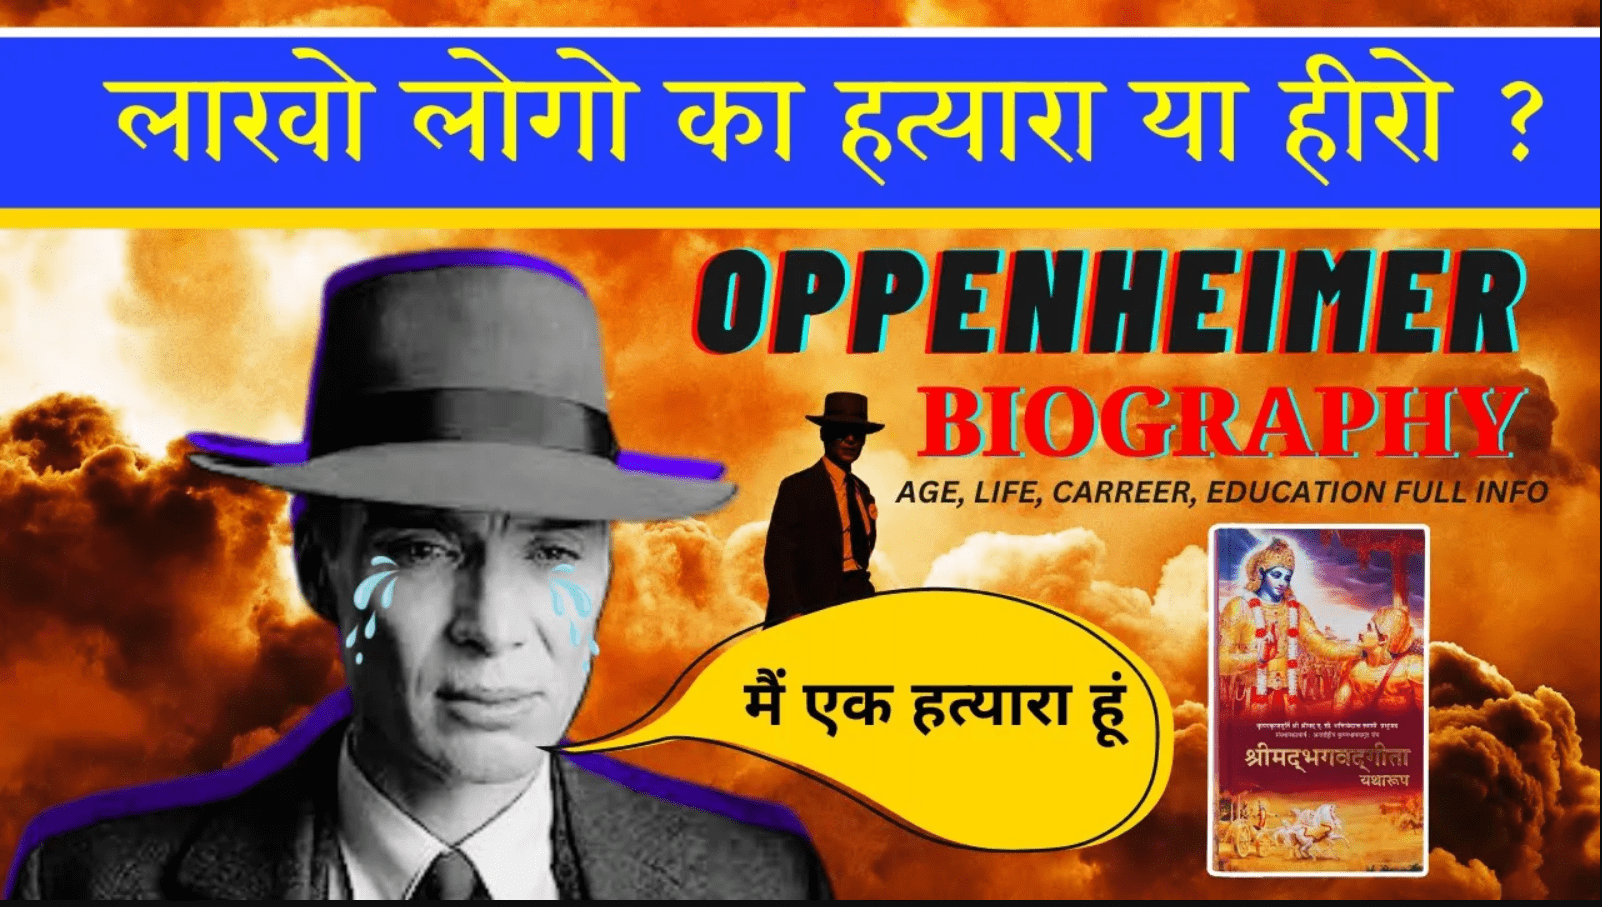 Oppenheimer Biography